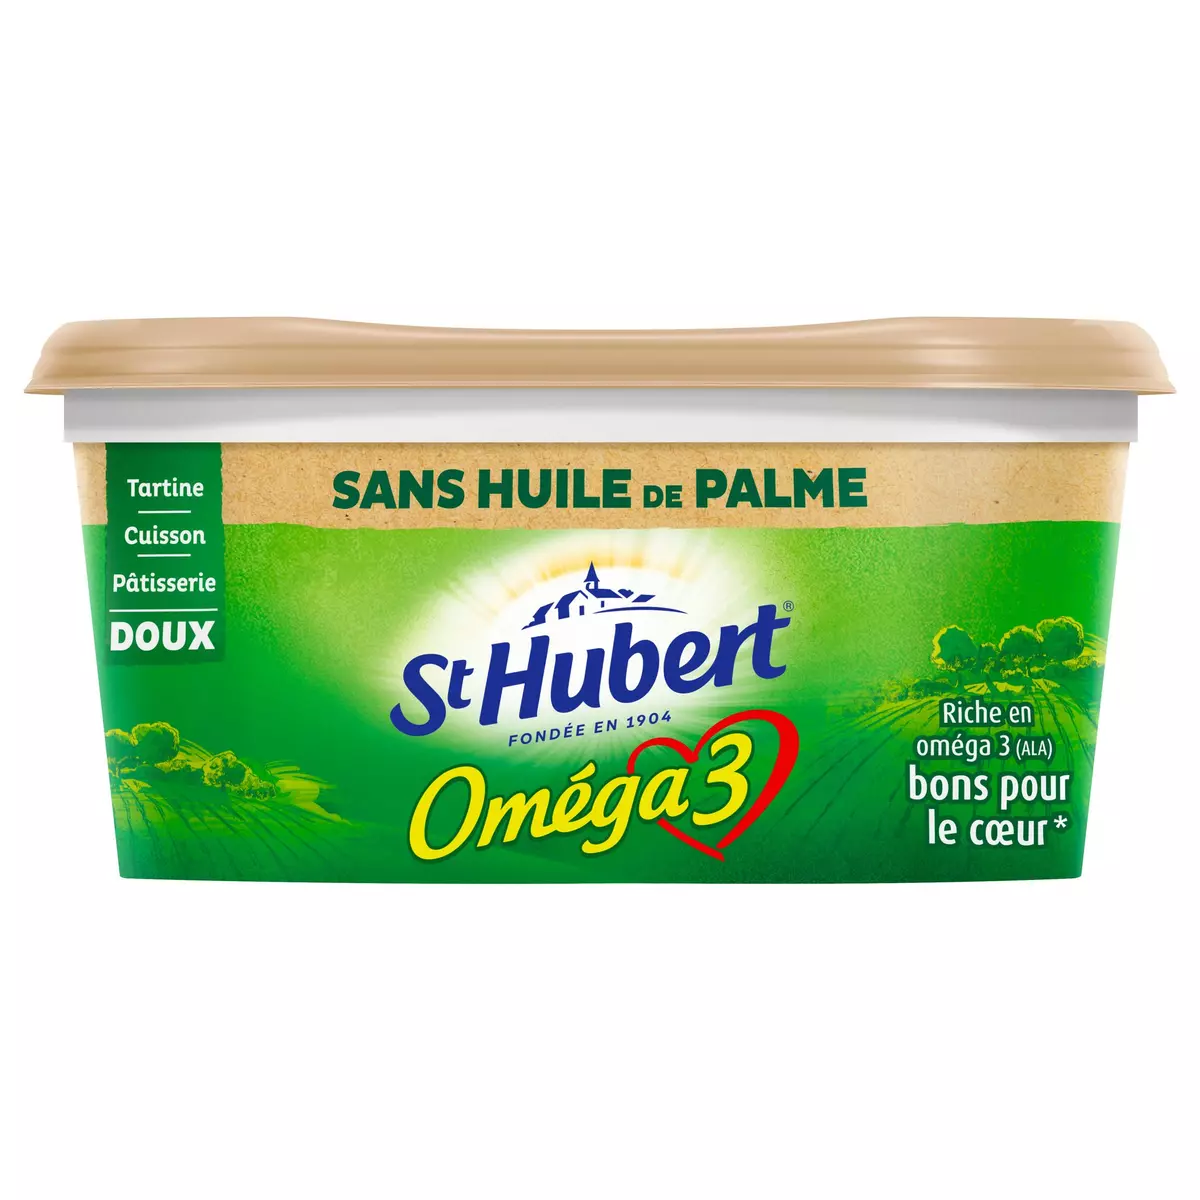 ST HUBERT Margarine oméga 3 doux tartine et cuisson sans huile de palme 500g